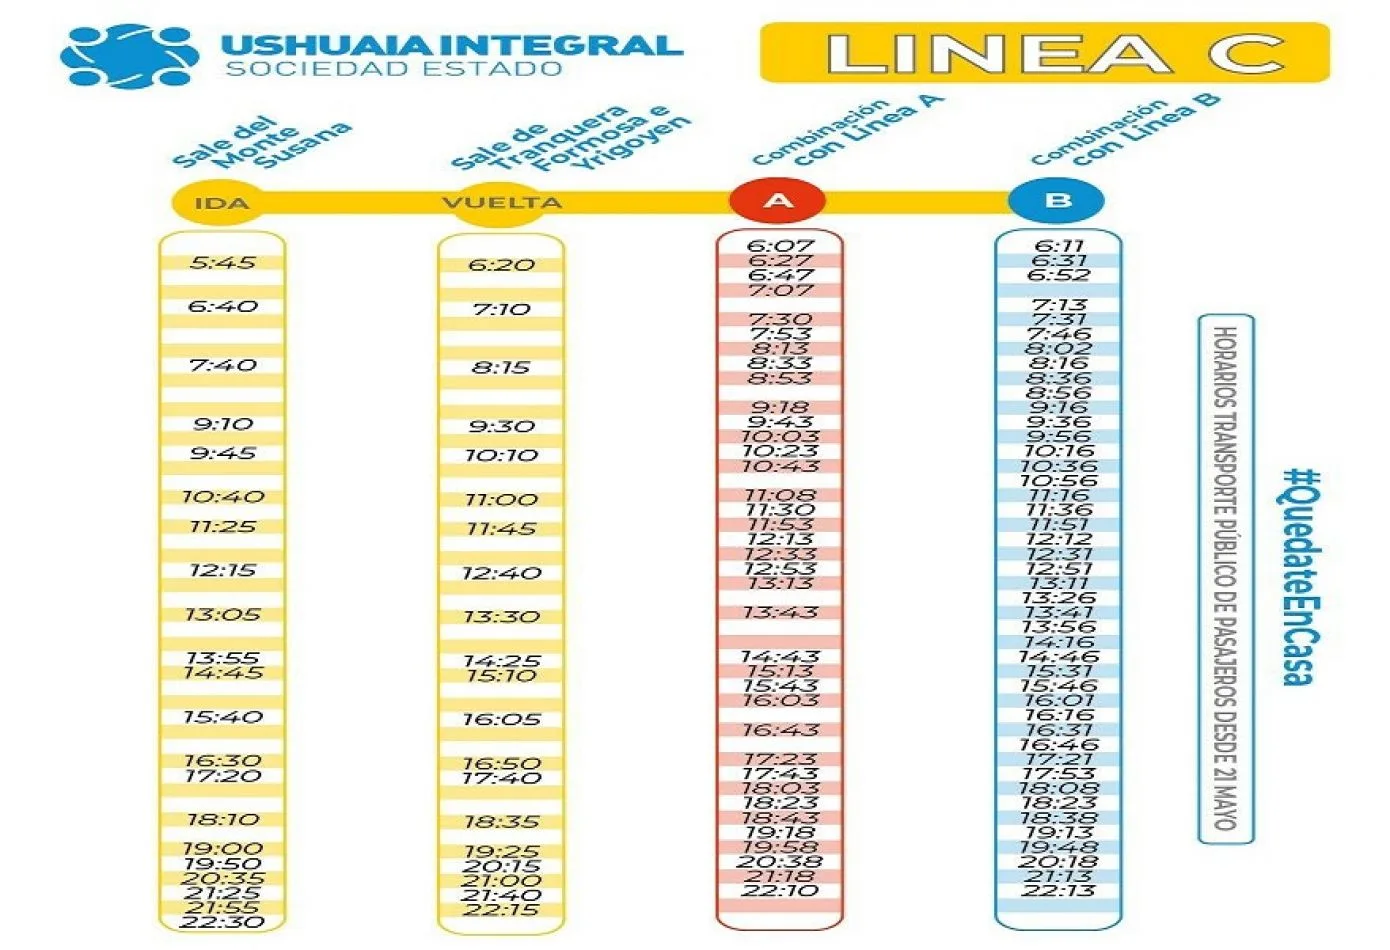 La empresa Ushuaia Integral Sociedad del Estado (UISE) definió la nueva grilla de frecuencias del transporte público de colectivos.